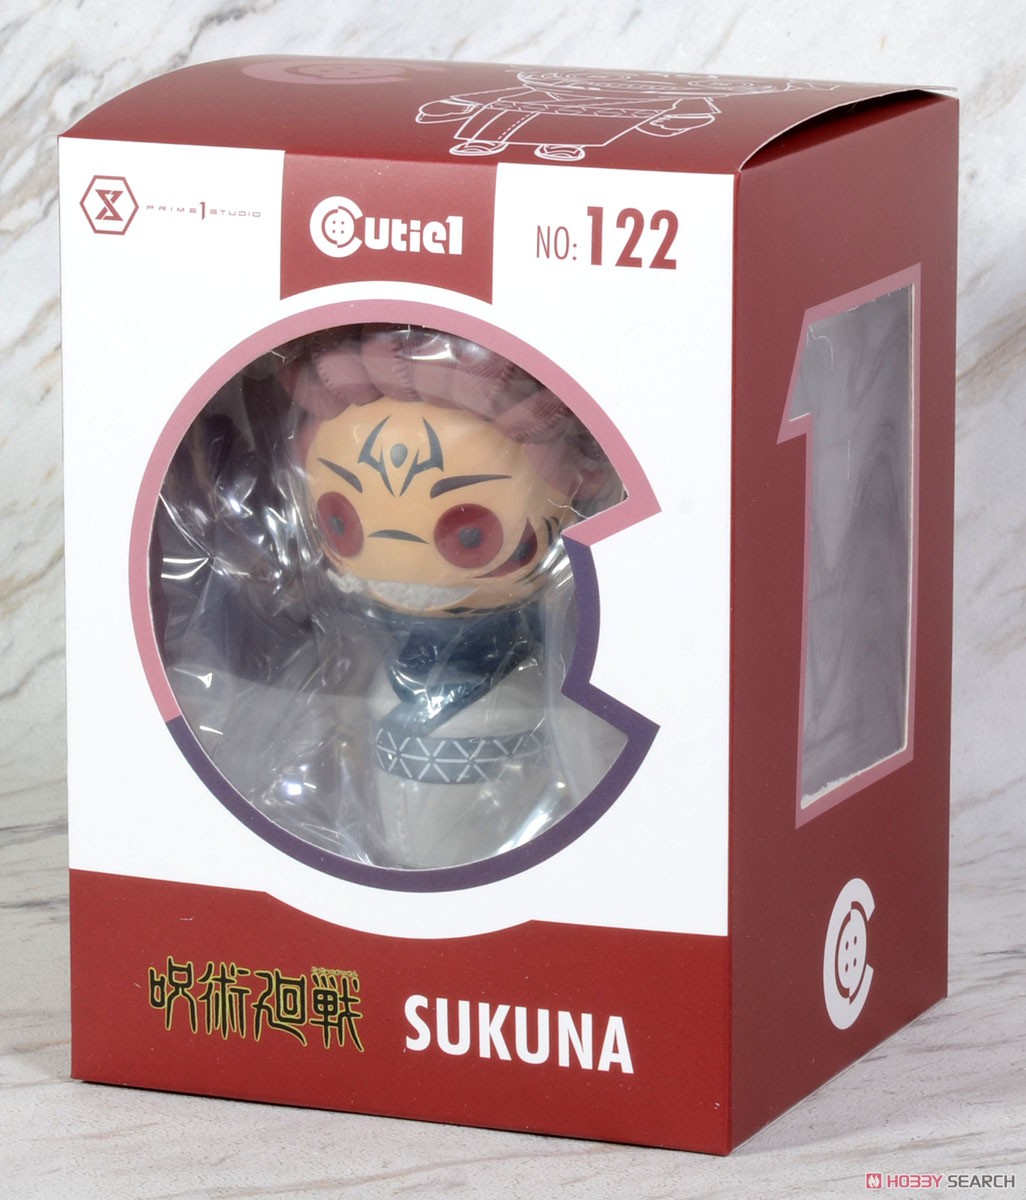 Cutie1 Jujutsu Kaisen Sukuna (Completed) Package1